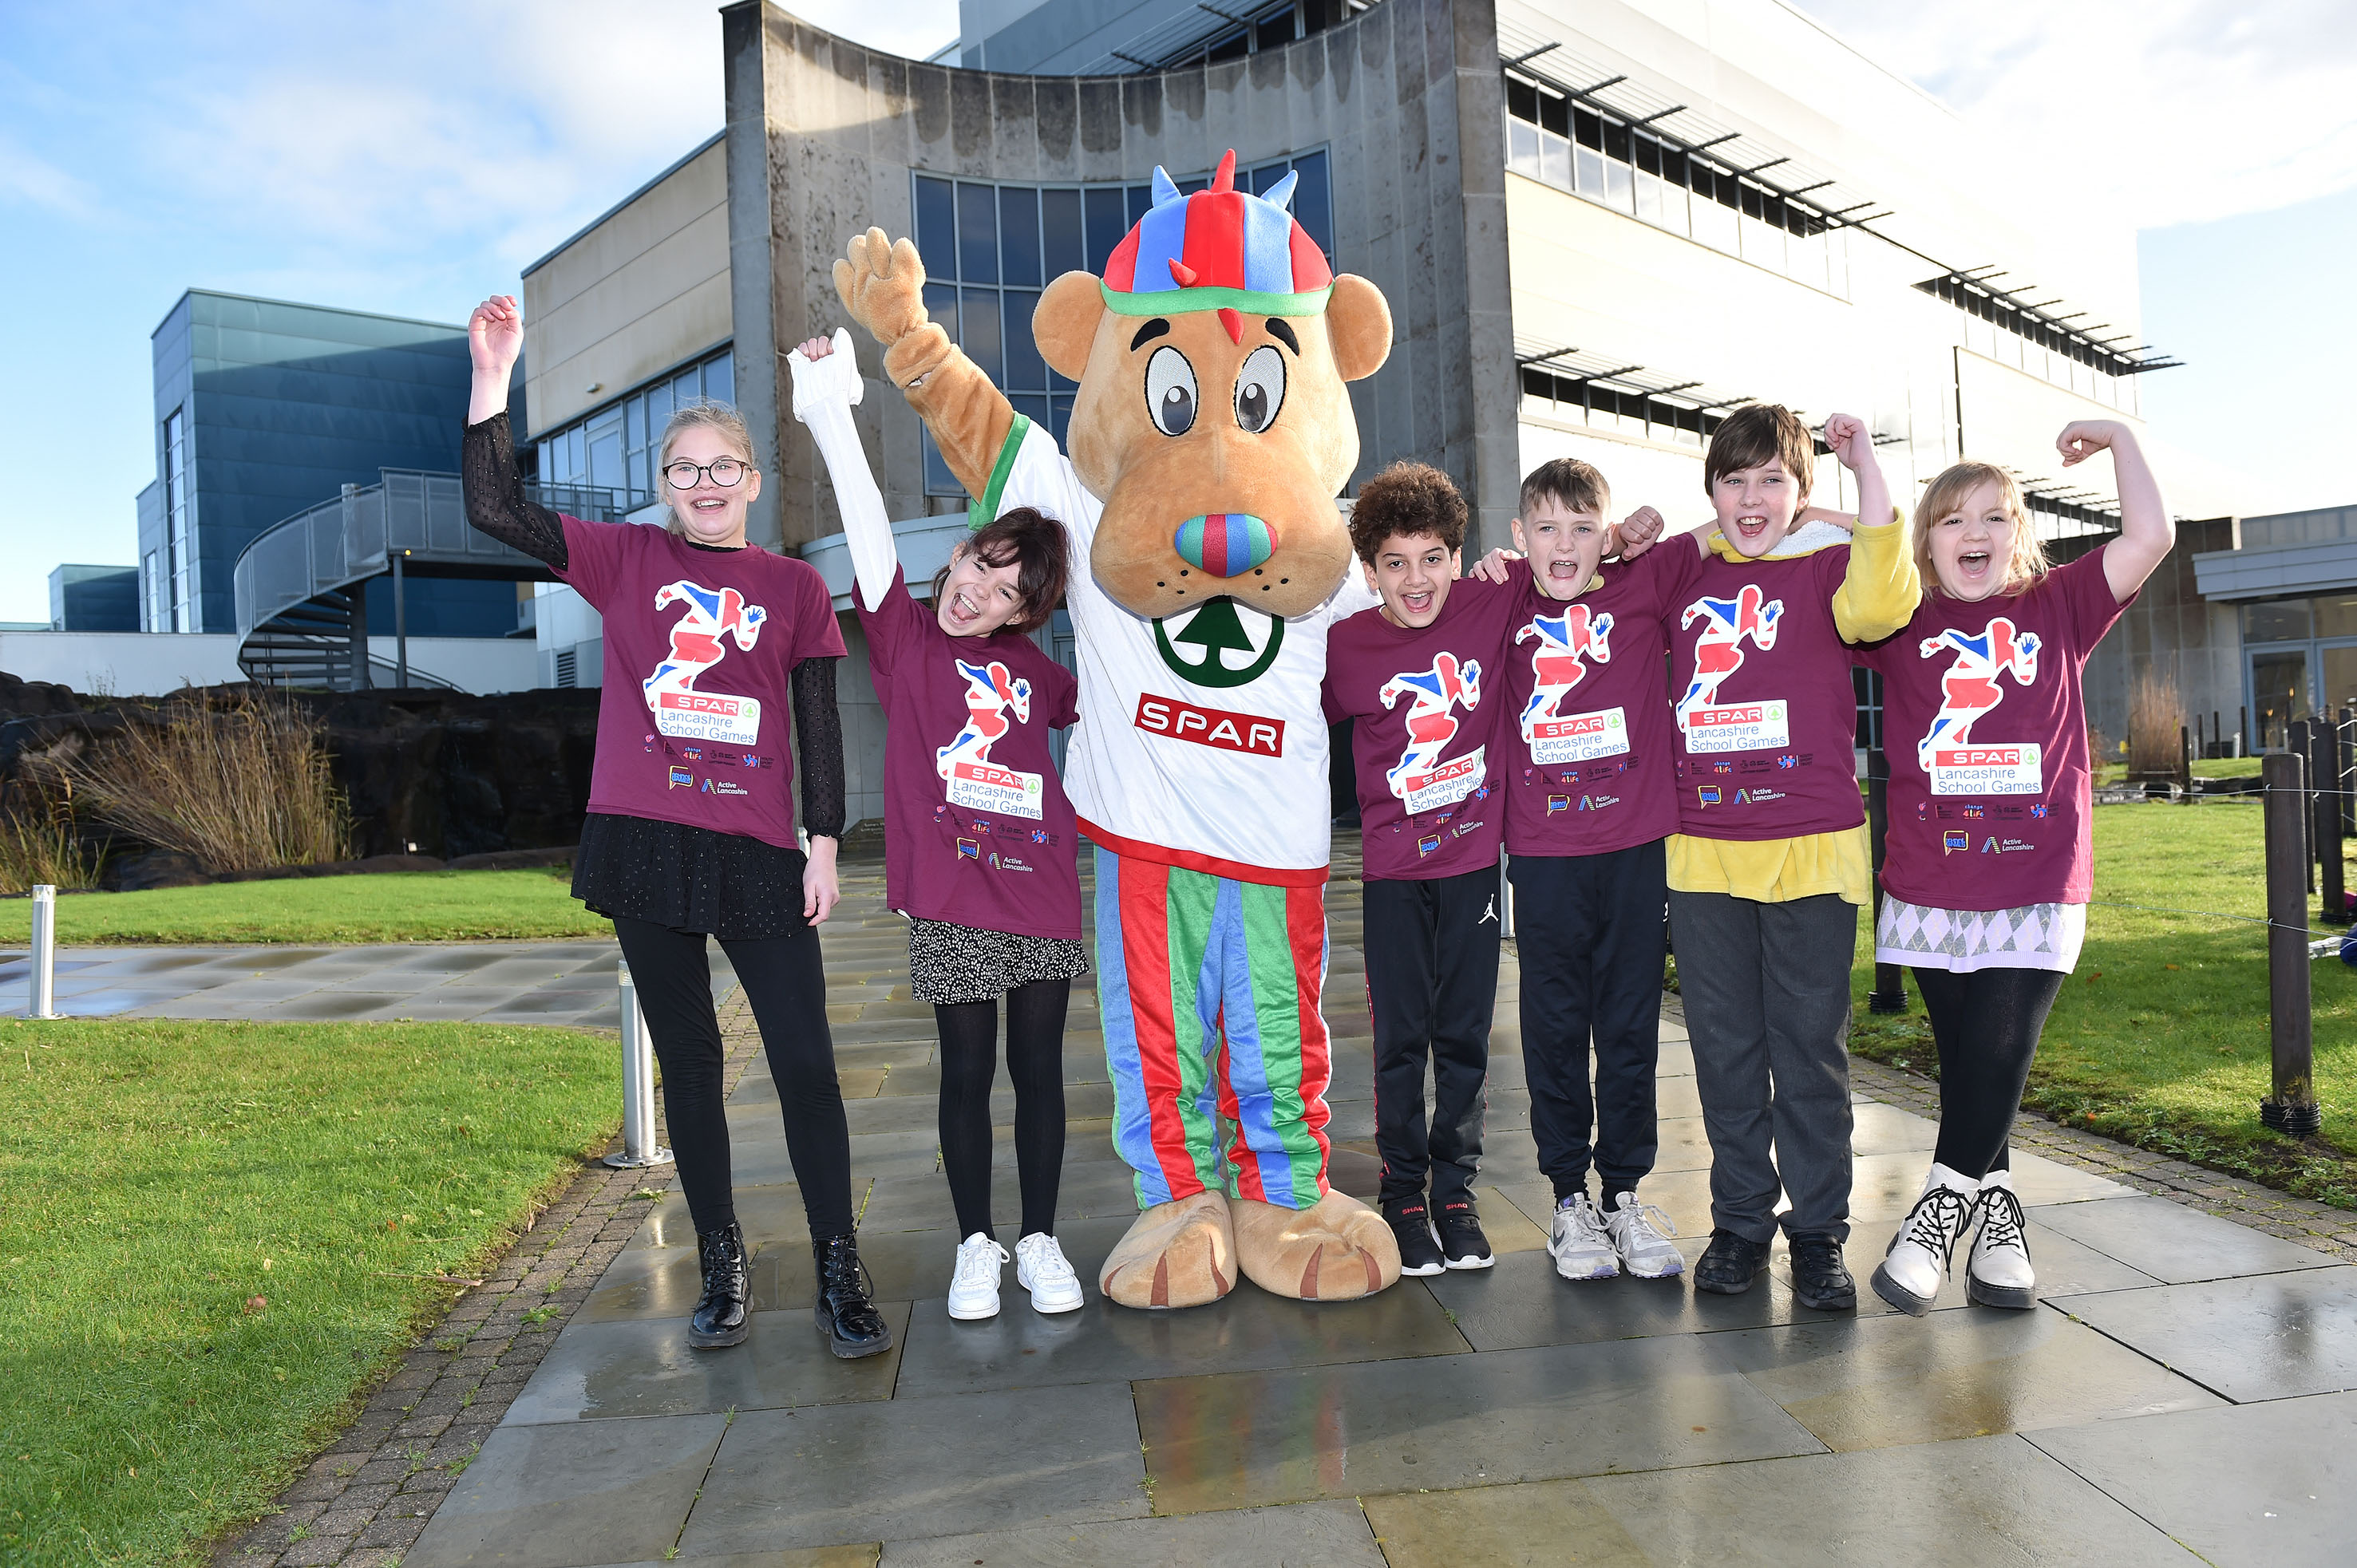 SPAR Lancashire School Games launch at James Hall & Co. Ltd